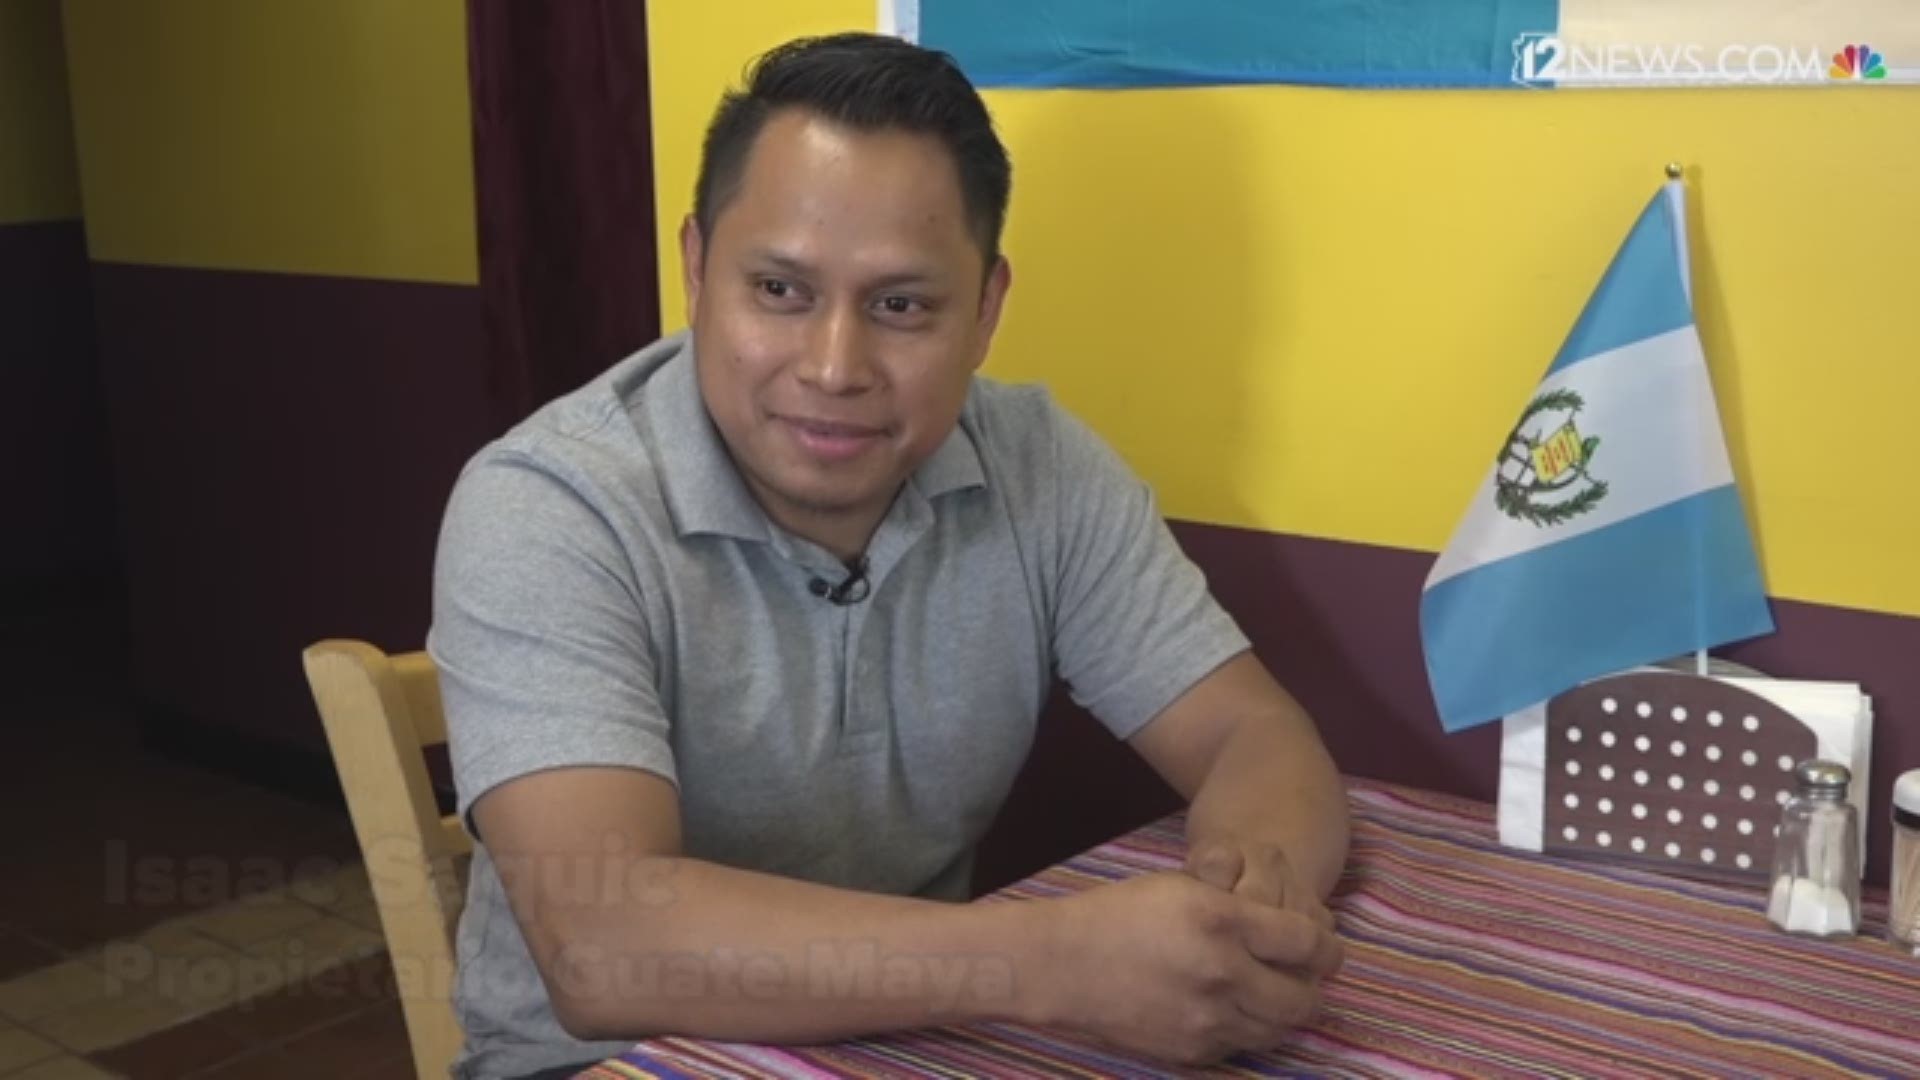 Isaac Saquic dice sentirse orgulloso de sus raíces y de su dialecto. También dice que lo que identifica a los guatemaltecos es lo unidos que son.